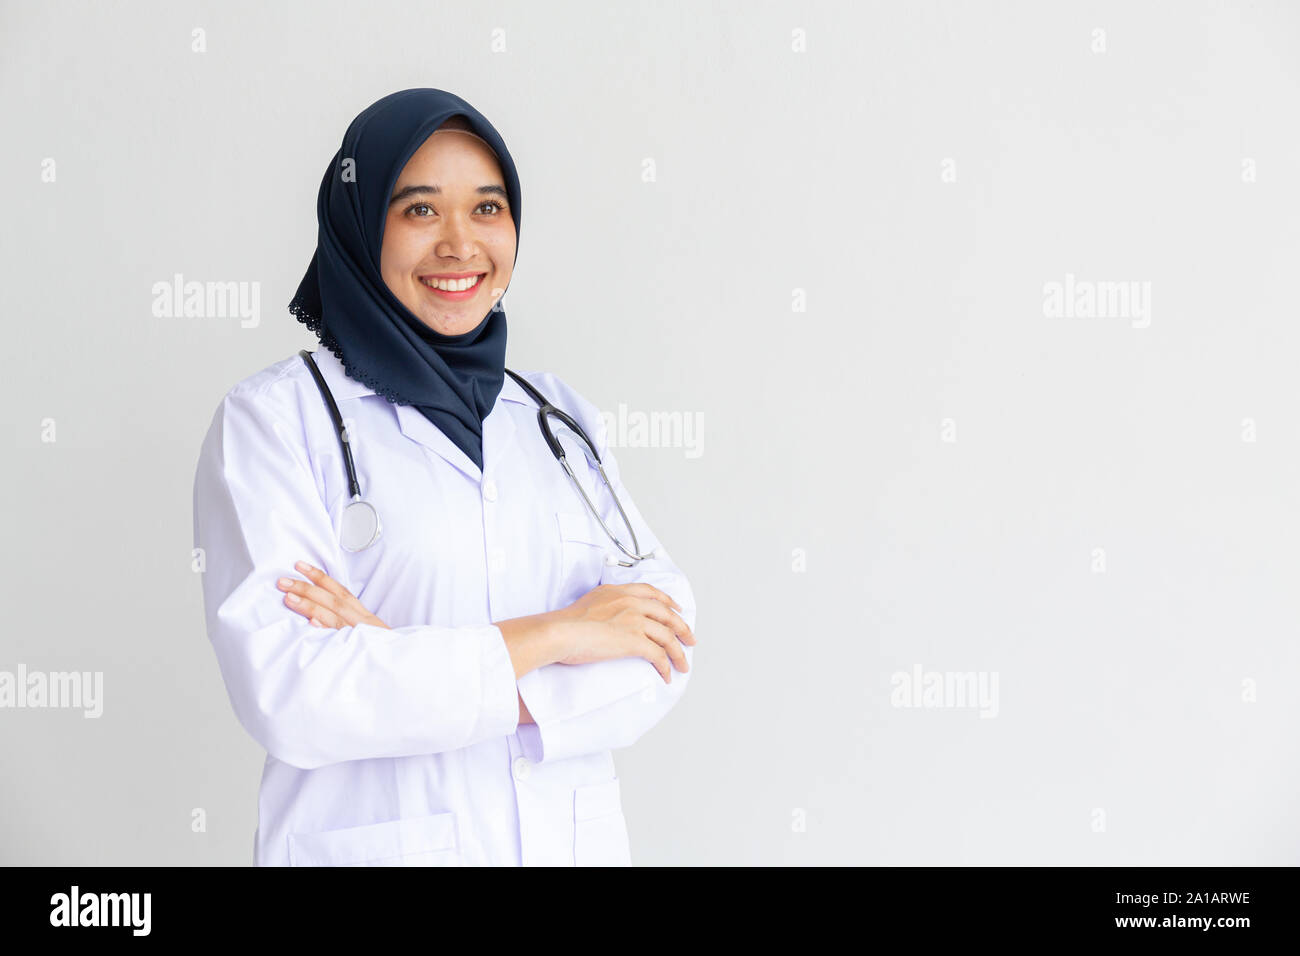 Giovani Musulmani arabi intern medico donne sorriso sulle labbra per isolare lo sfondo bianco concetto per l'Islam persone che lavorano in ospedale medico health care, infermiera moderno Foto Stock